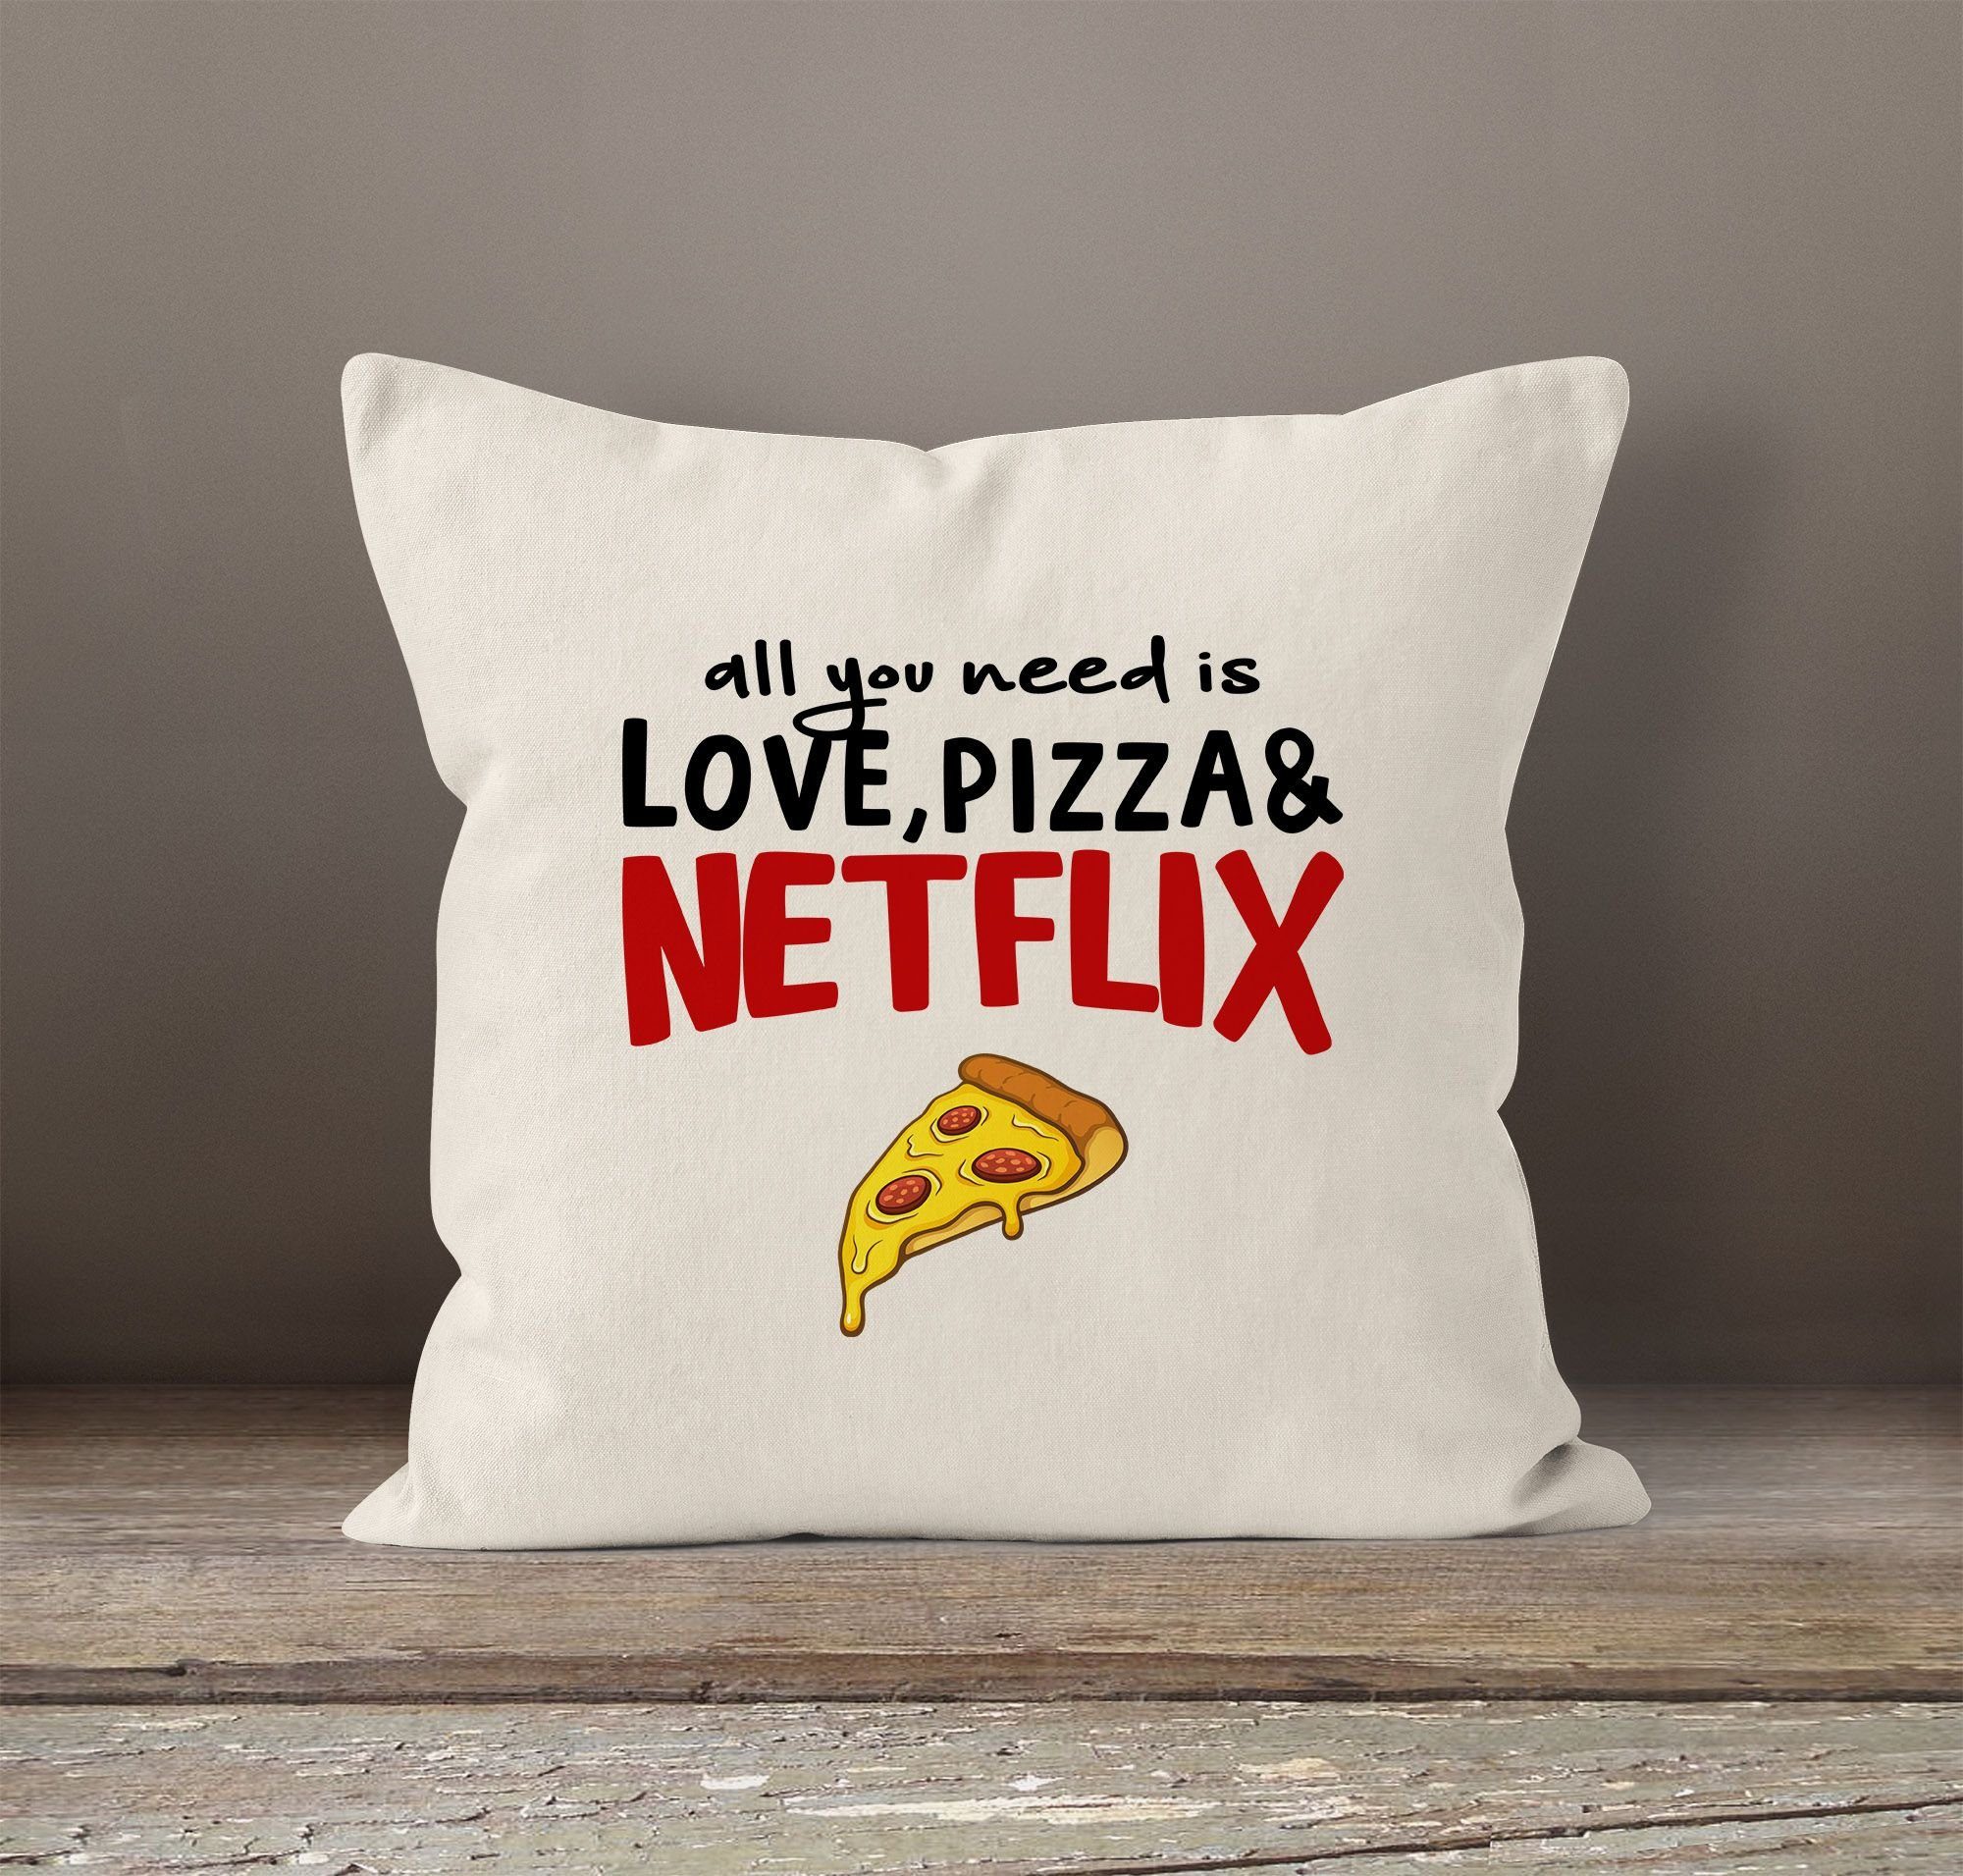 Kissen-Hülle need and you MoonWorks® love, Dekokissen Netflix Kissen-Bezug MoonWorks natur pizza all Baumwolle is Deko-Kissen